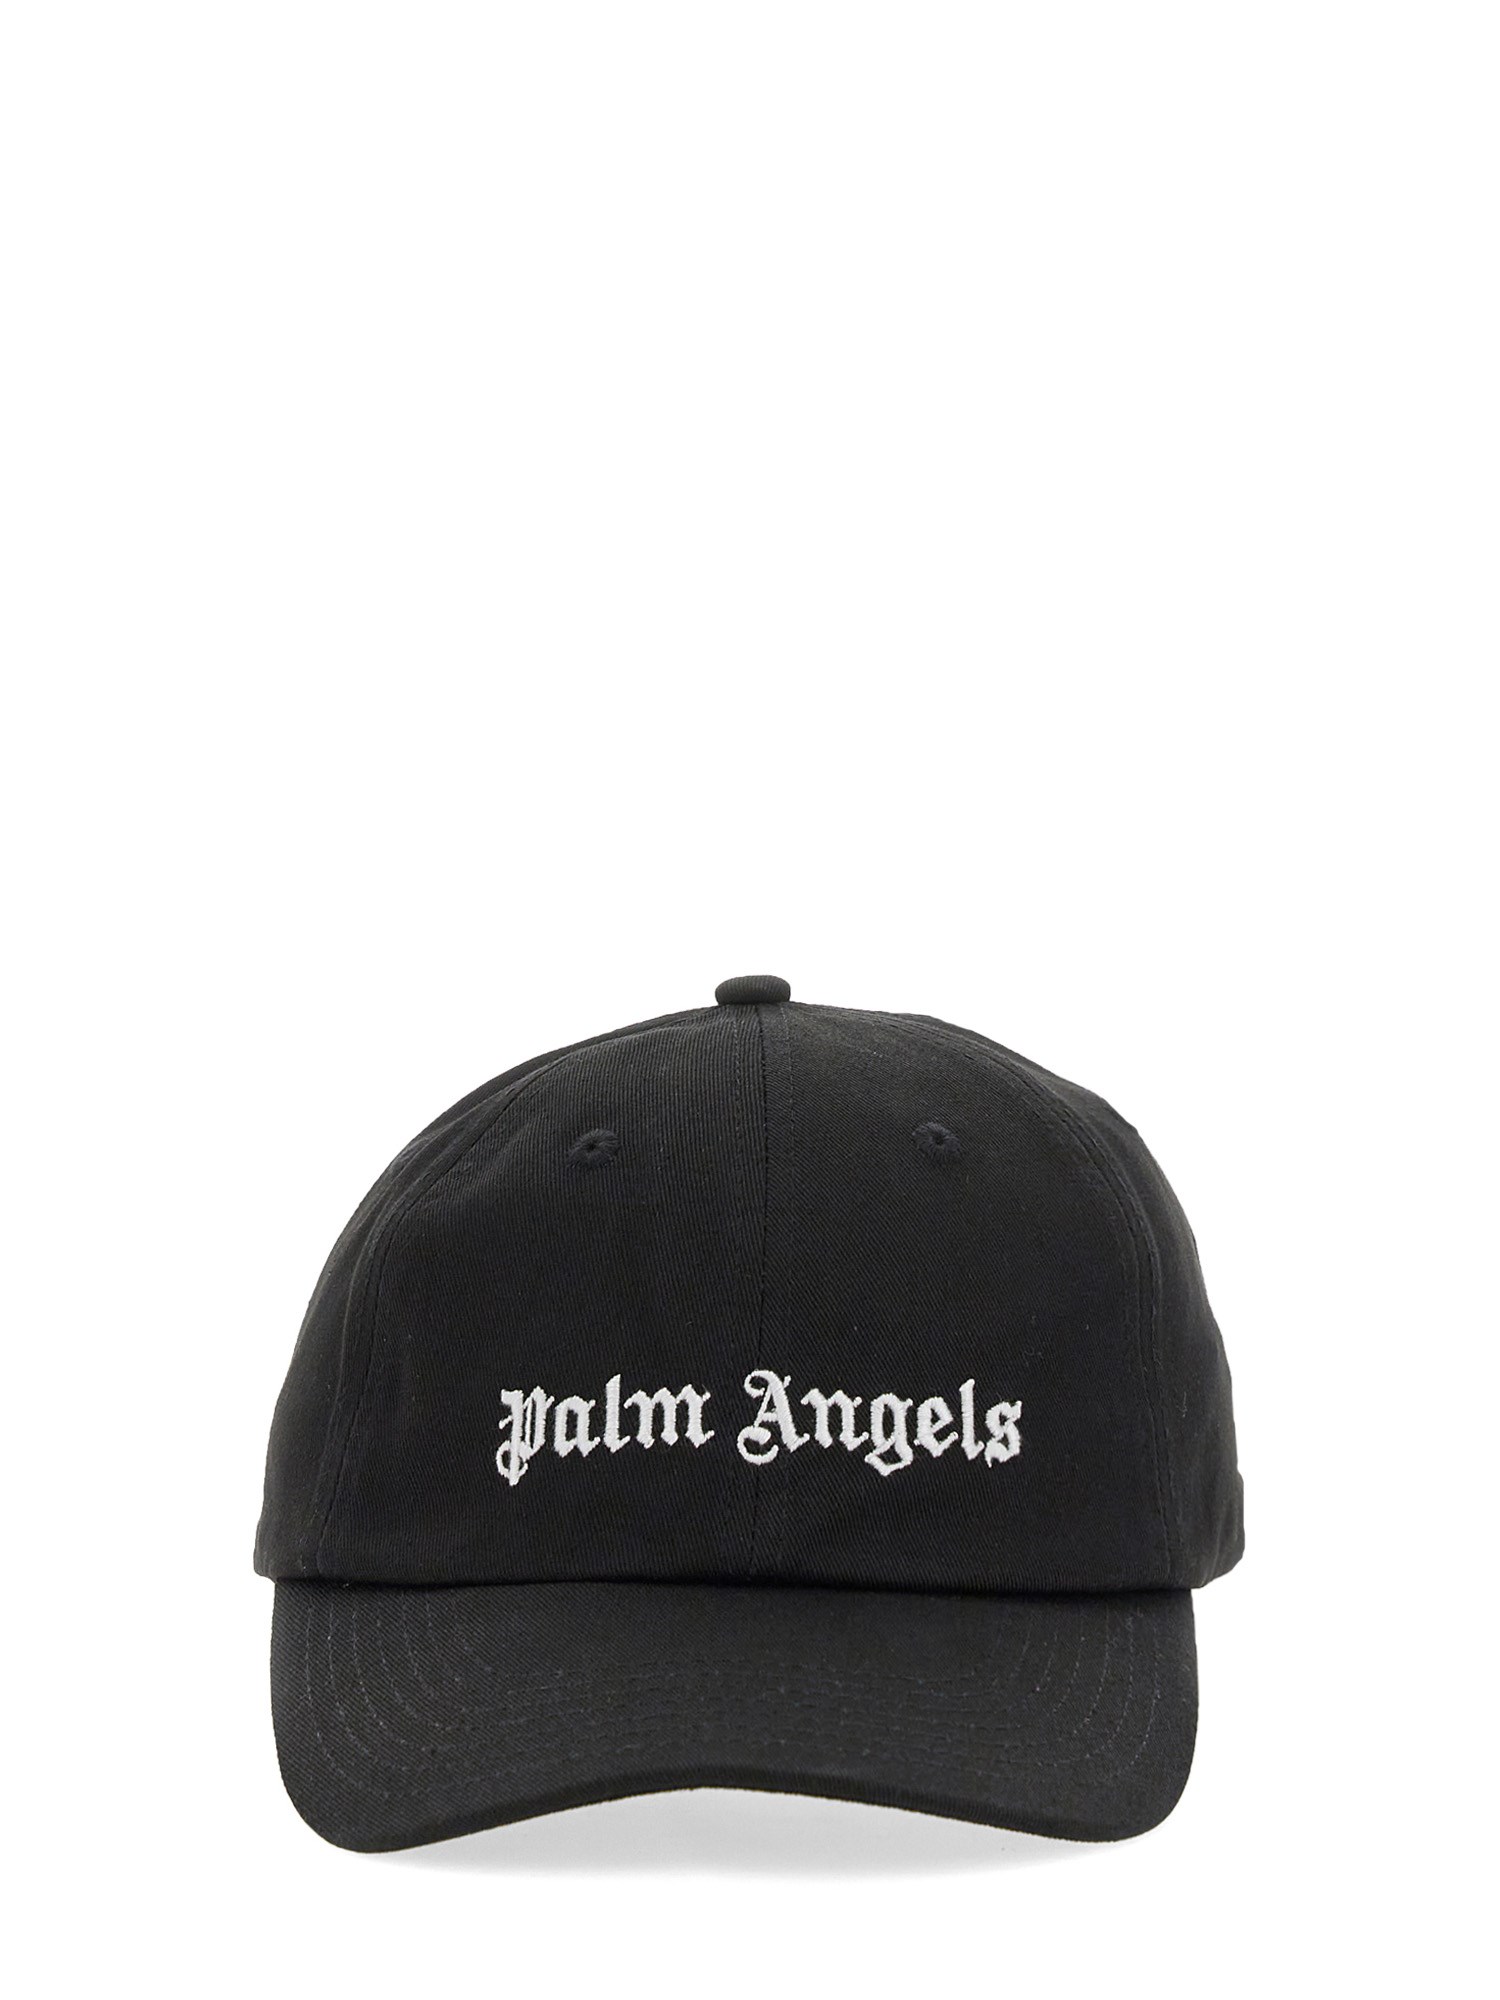 PALM ANGELS palm angels baseball cap